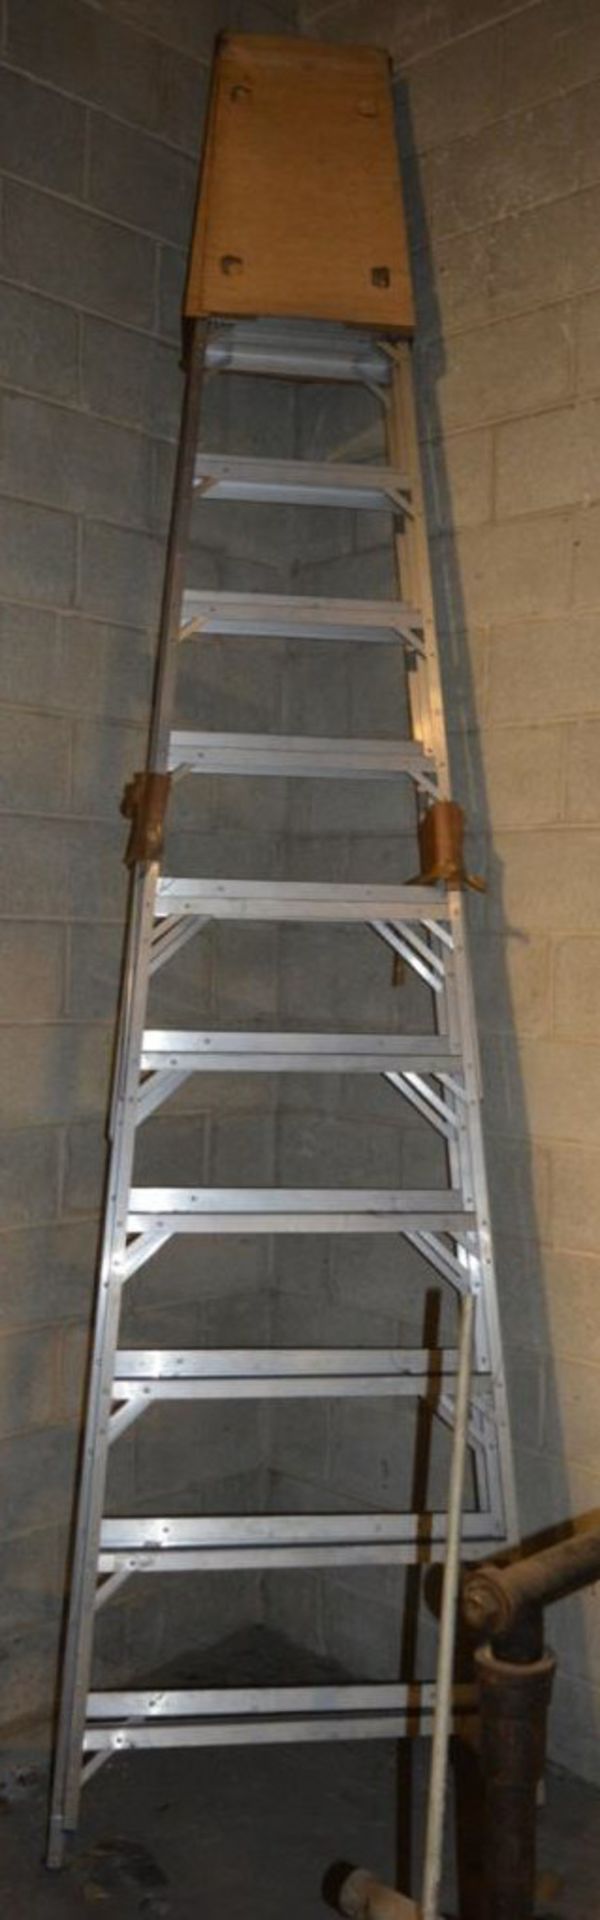 Werner 1610 12' Aluminum Step Ladder